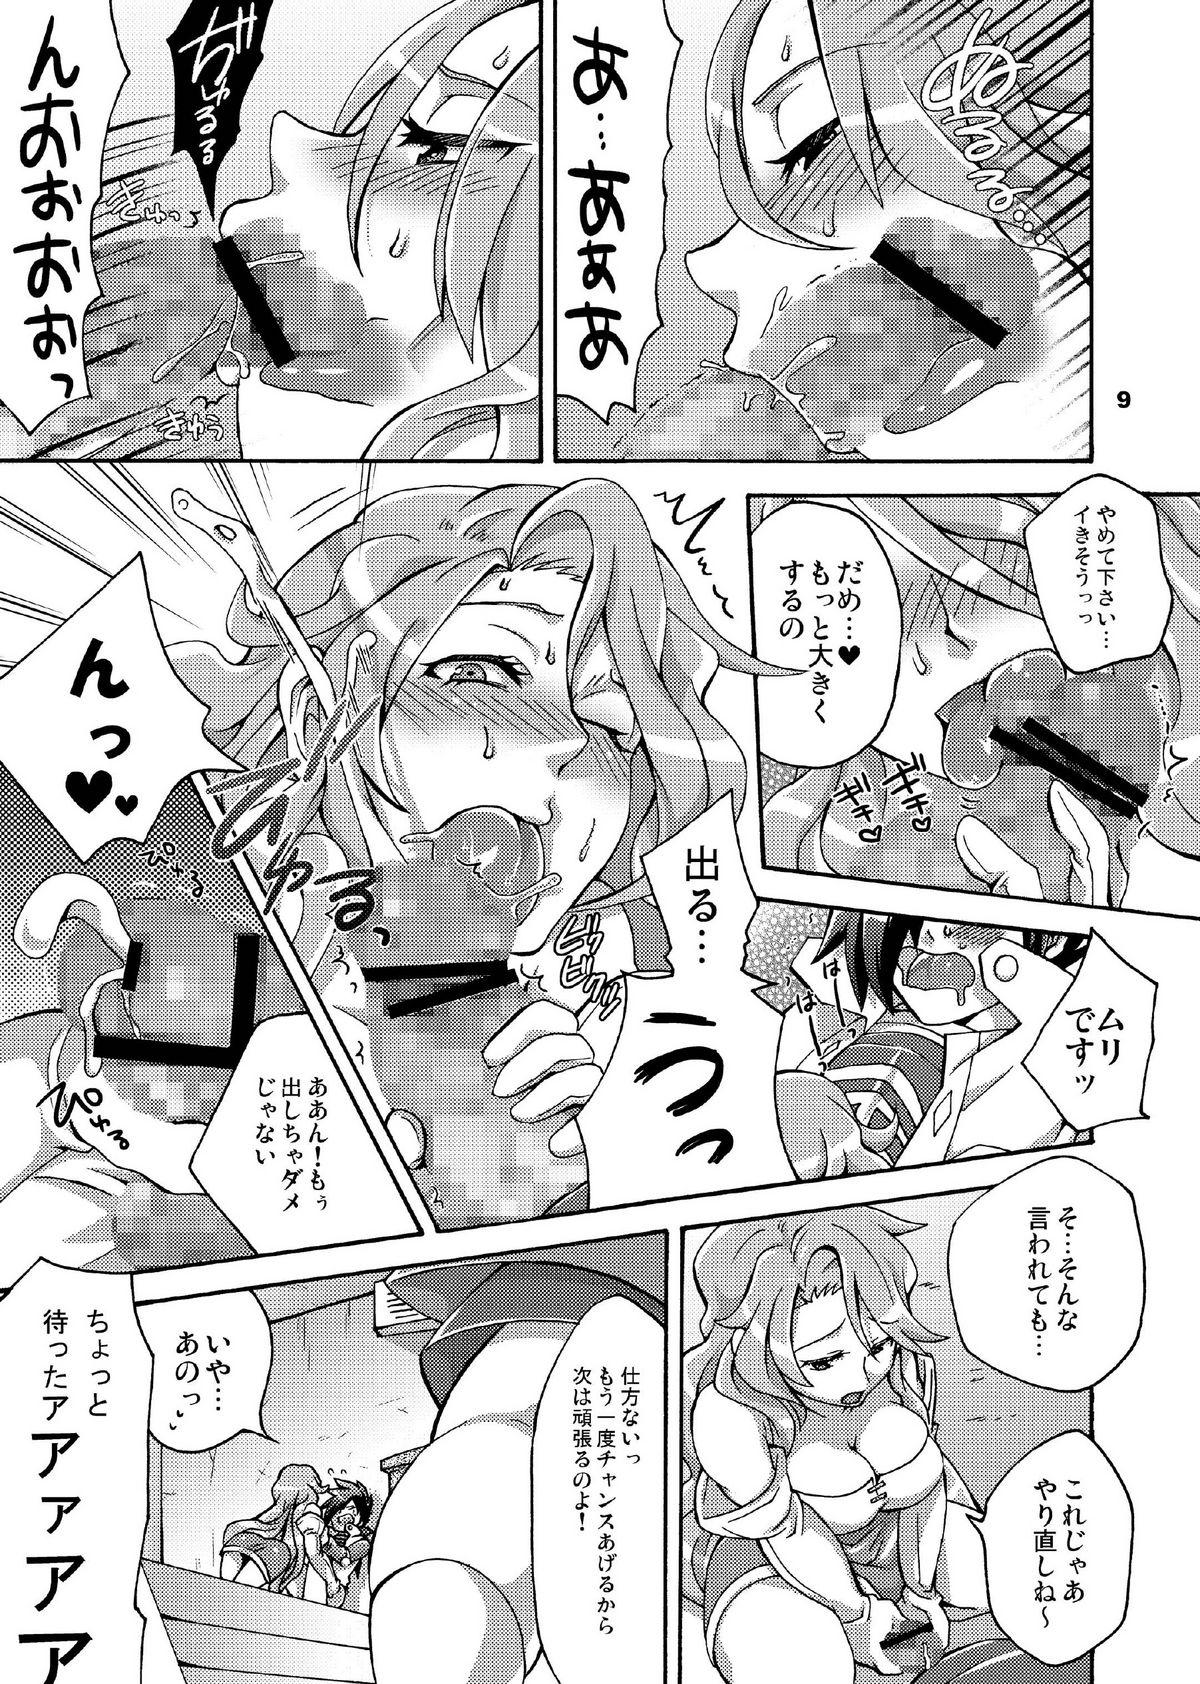 Leather Triple Con Back - Shin megami tensei Sexcam - Page 9